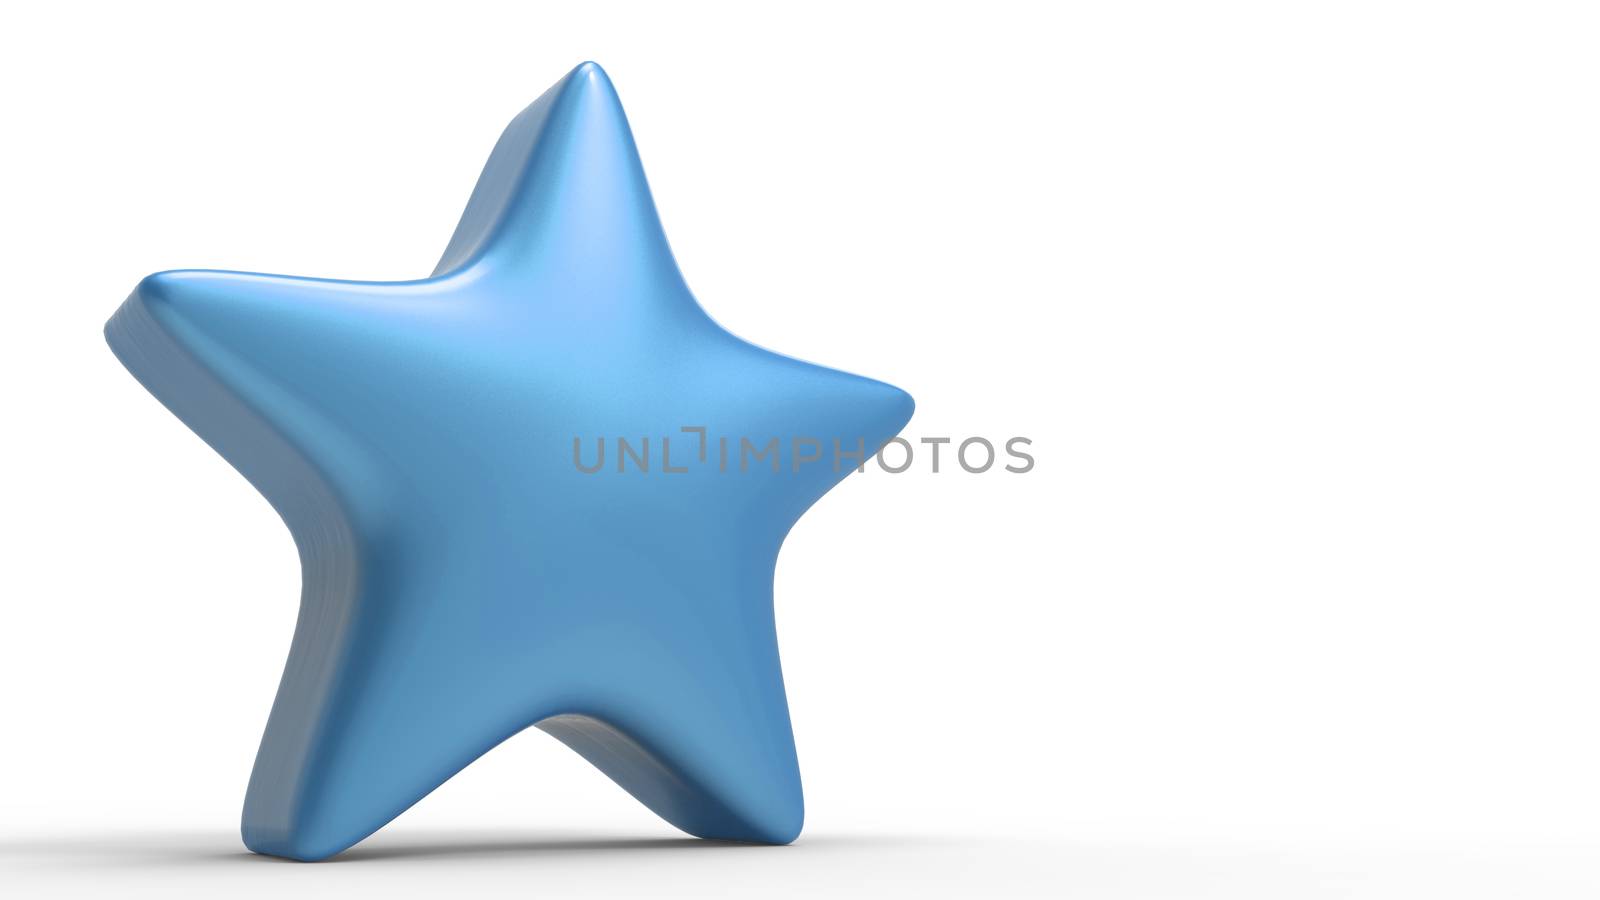 3d blue star on color background. Render and illustration of golden star for premium